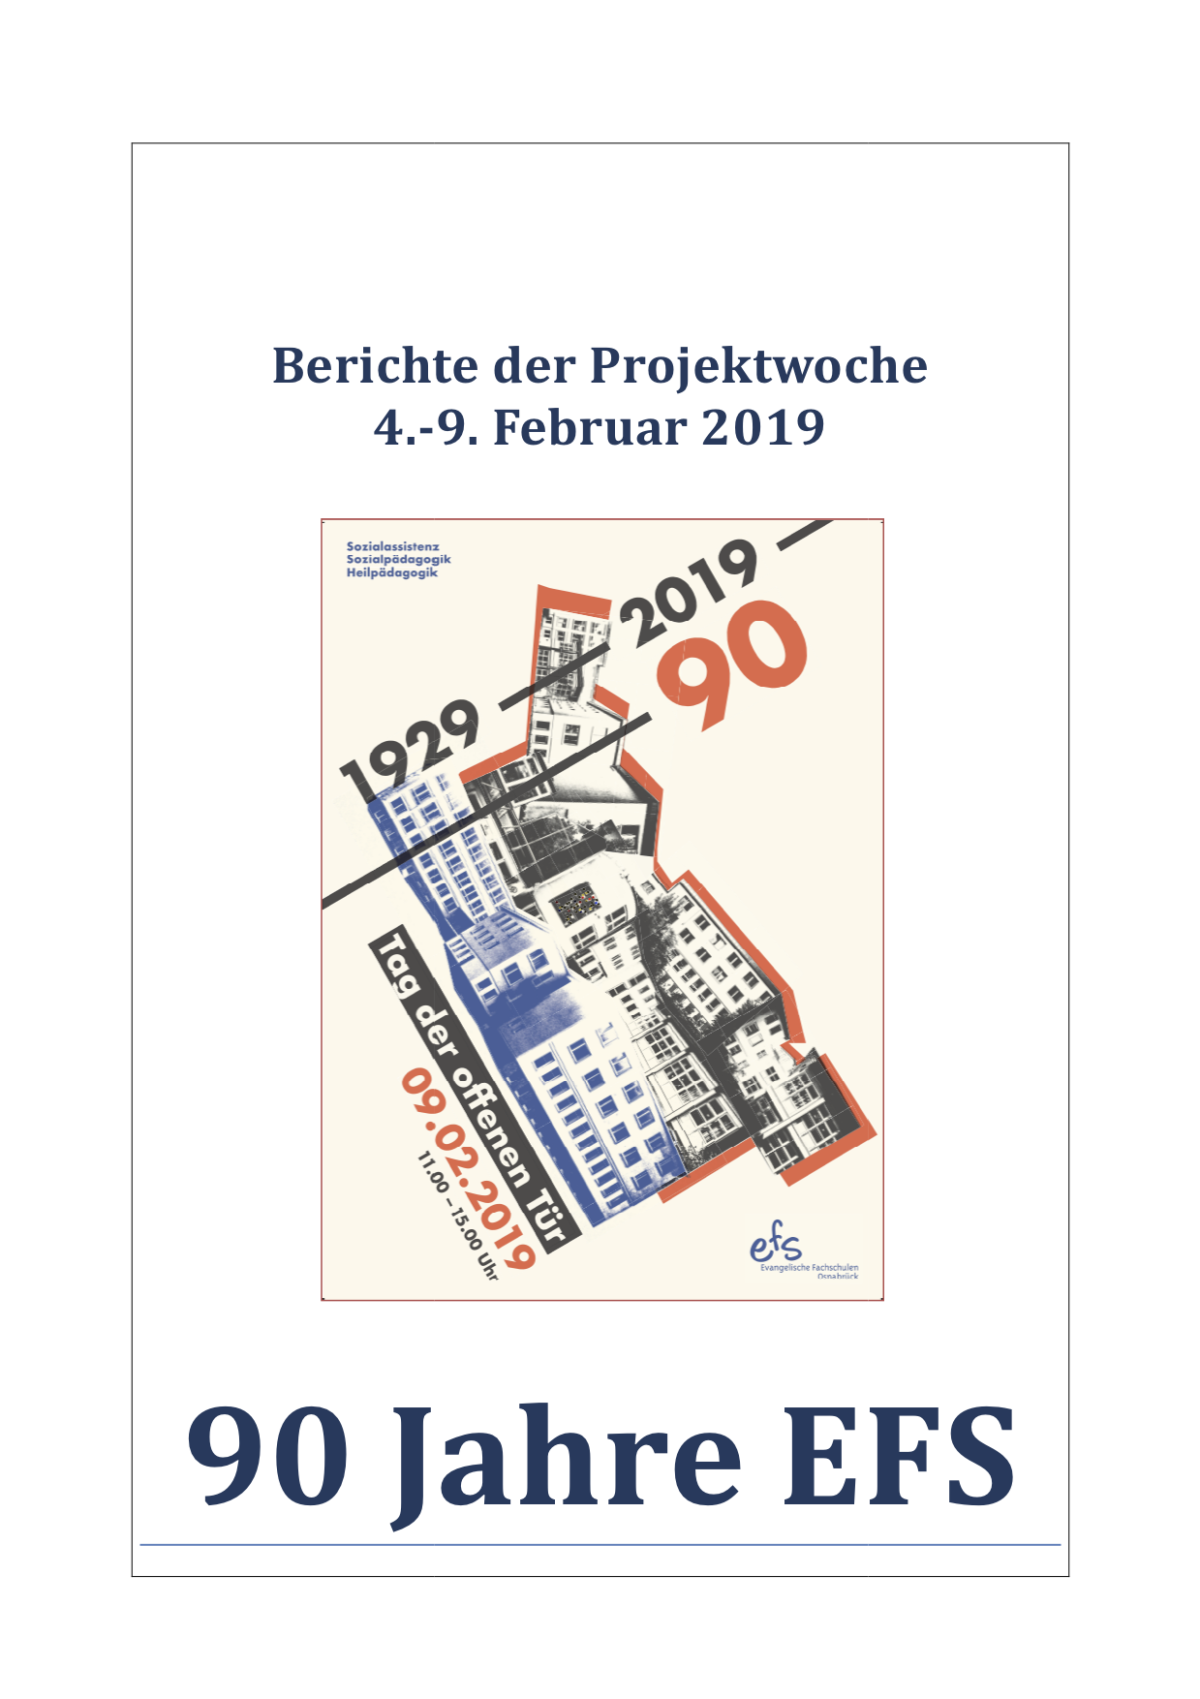 Dokumentation der Projektwoche „90 Jahre EFS“ fertig!